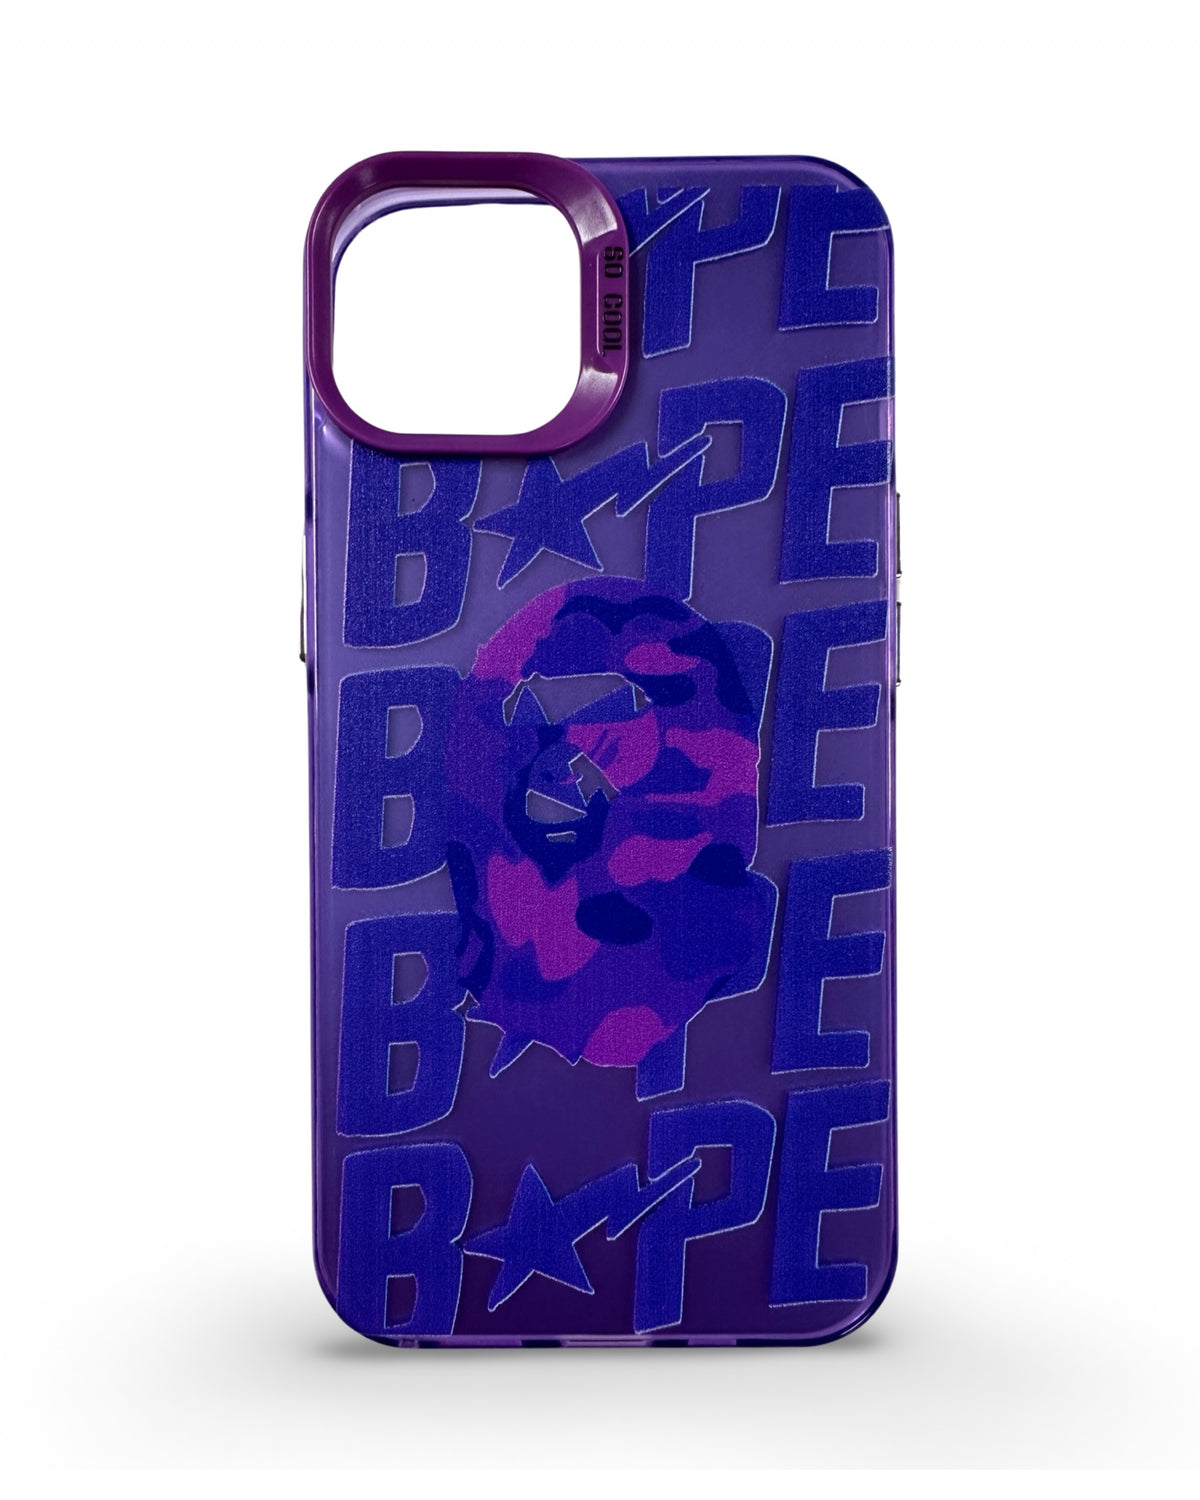 CaseNerd "Purple Ape" iPhone Case